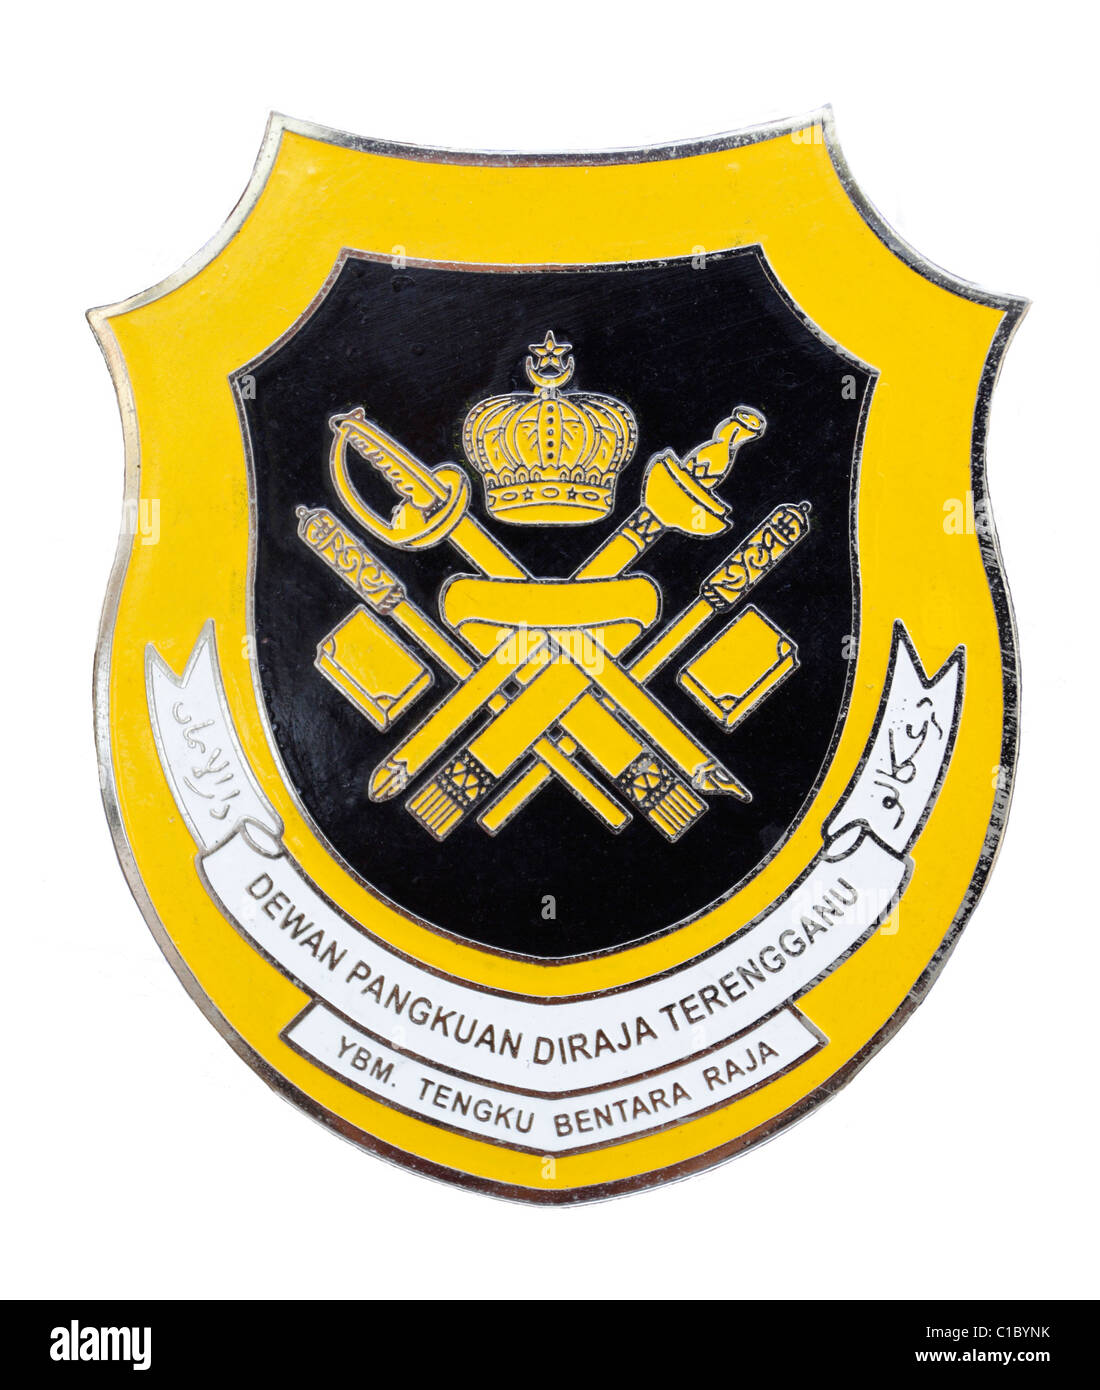 Royal council crest - Terengganu, Malaysia Stock Photo